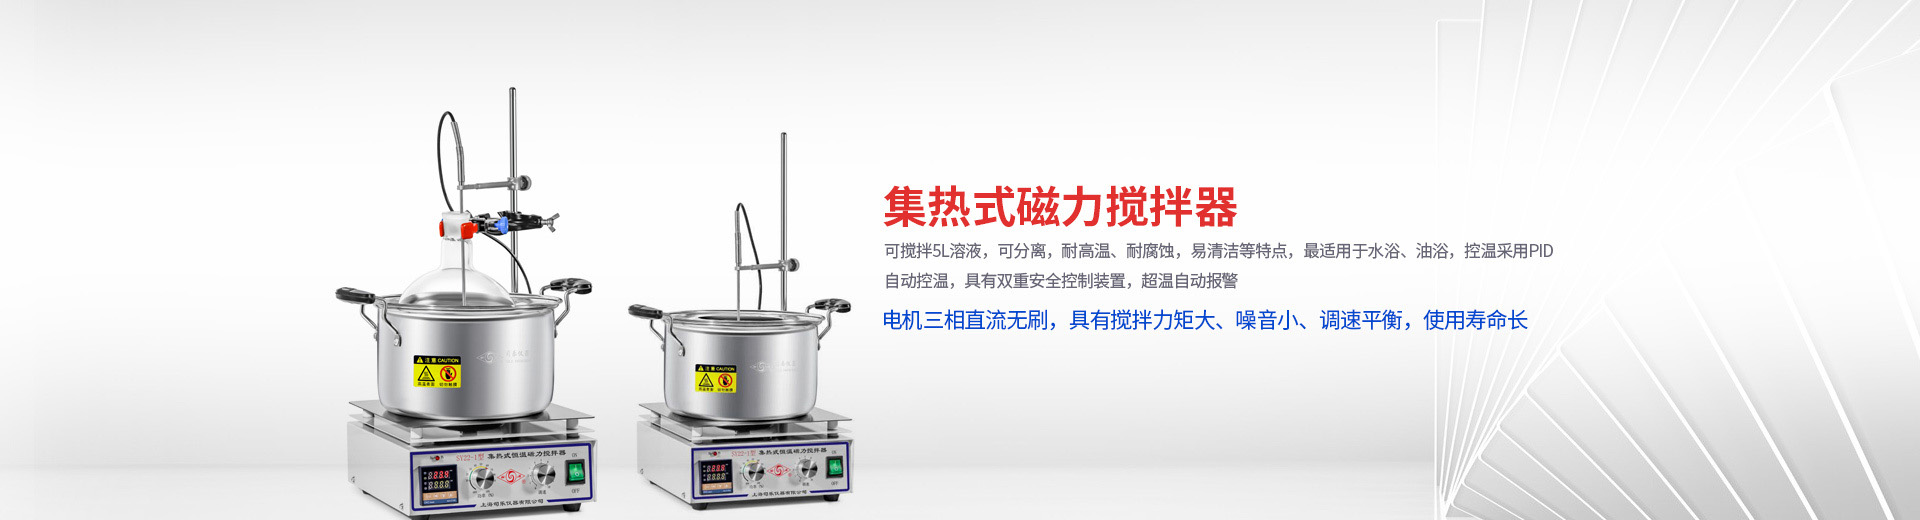 上海司乐 四工位 数显 恒温磁力搅拌器 T09-1S